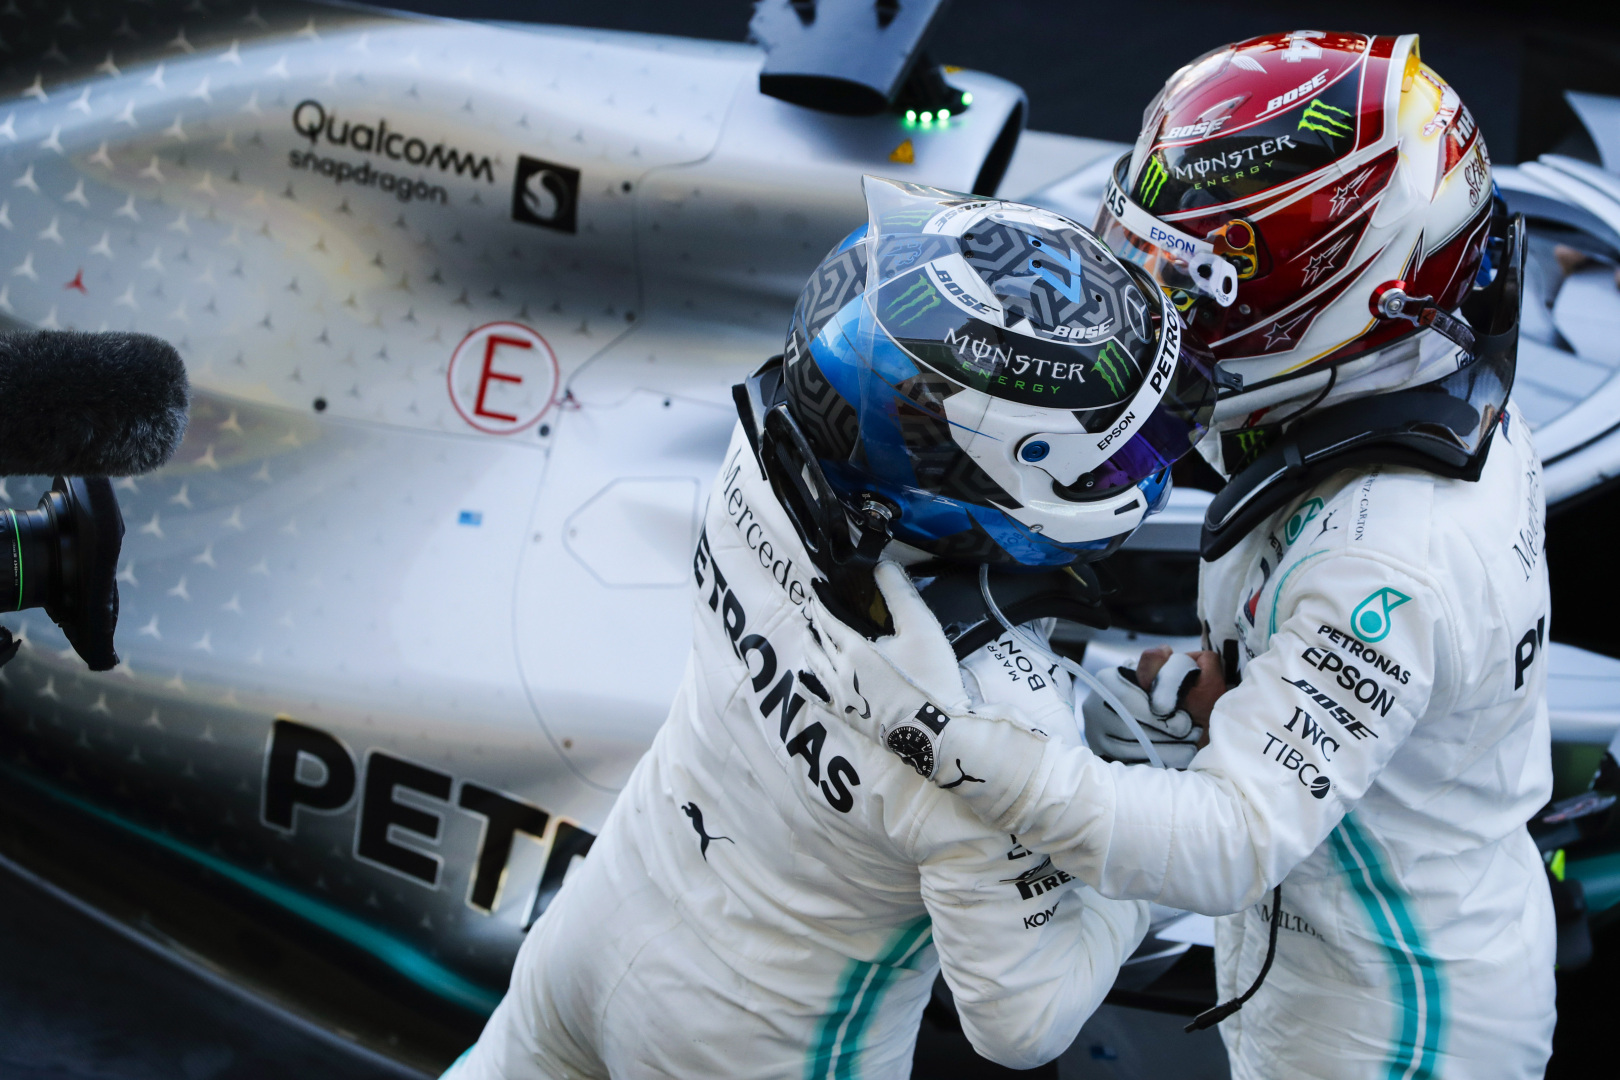 2019 Japanese Grand Prix, Sunday - Valtteri Bottas & Lewis Hamilton (image courtesy Mercedes-AMG Petronas)